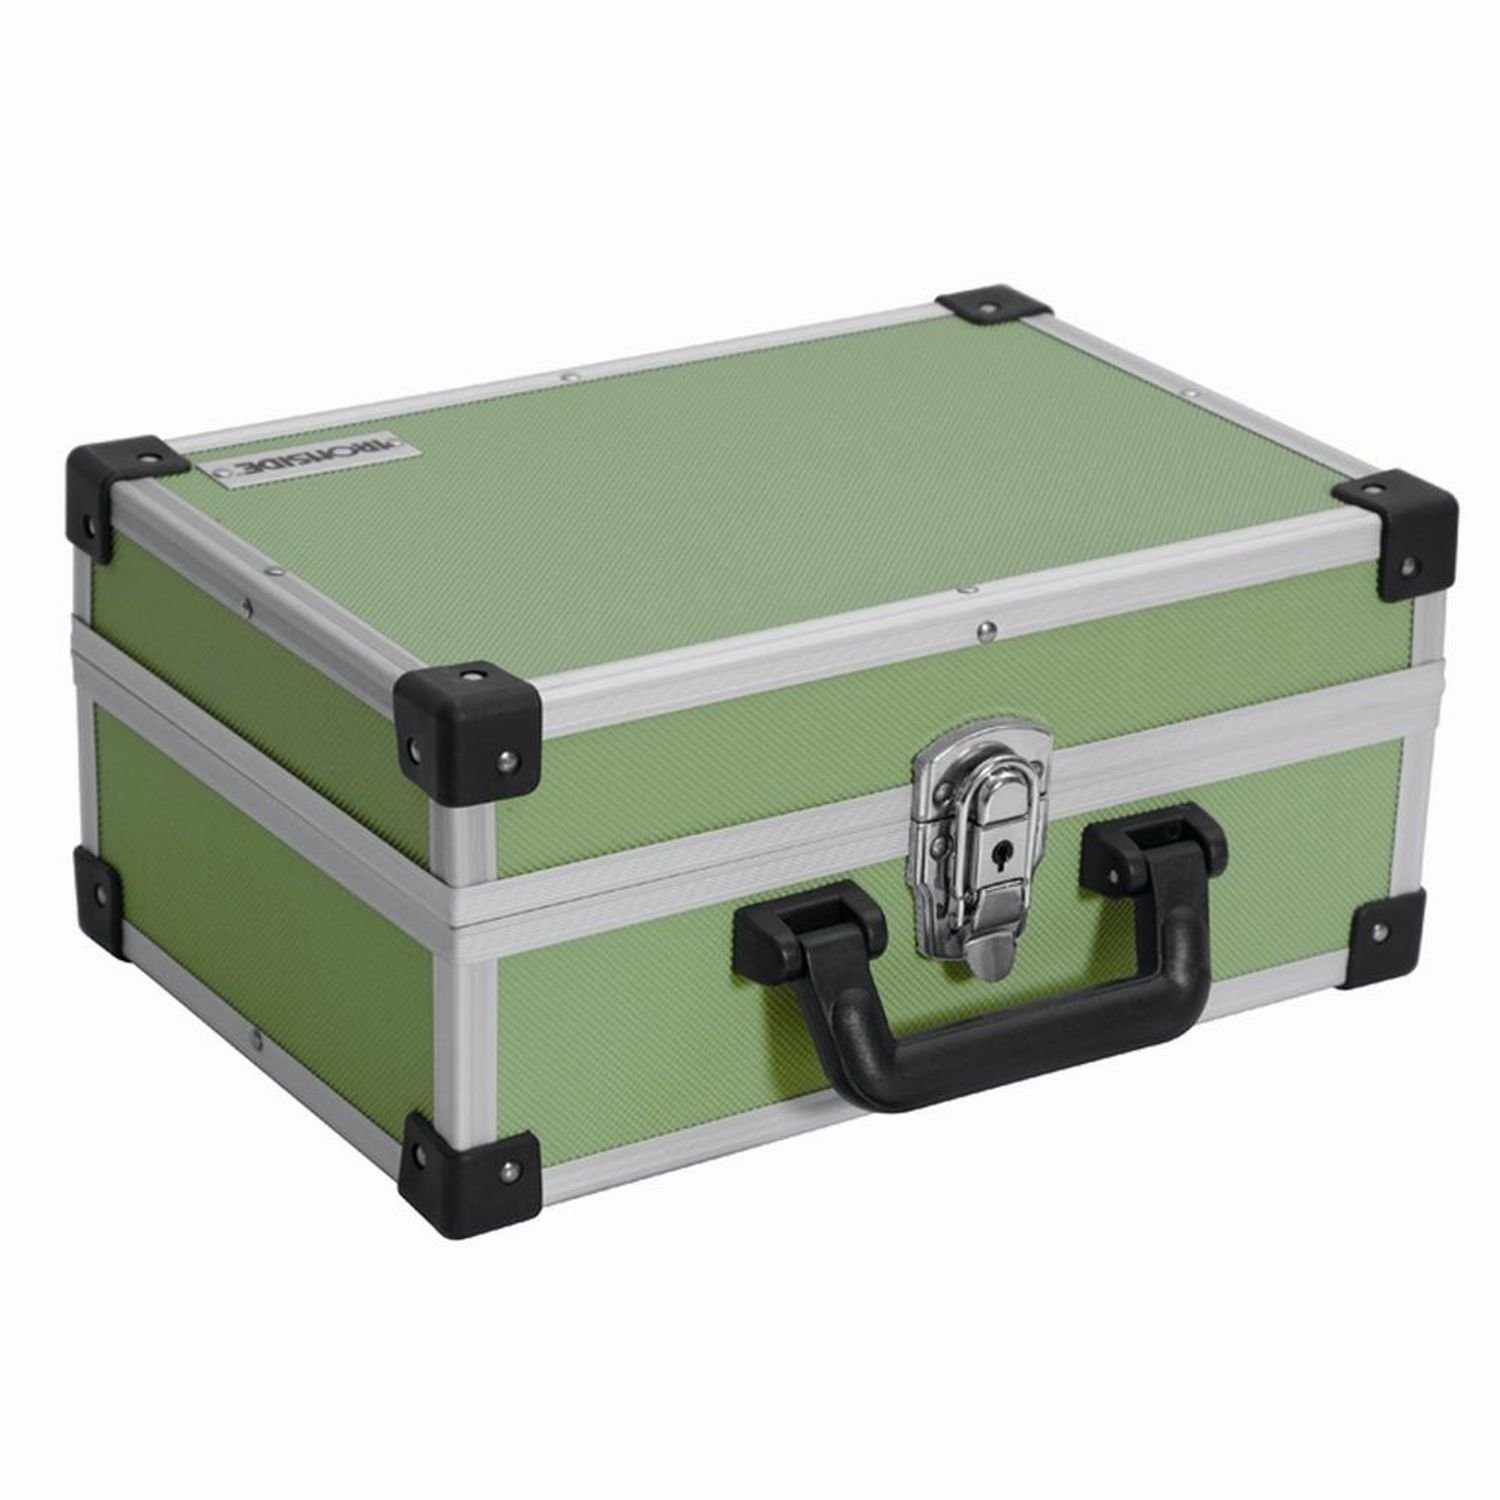 IRONSIDE Werkzeugkoffer 330x230x150mm Alu grün Wer Werkzeugkasten Werkzeugkiste Werkzeugkoffer